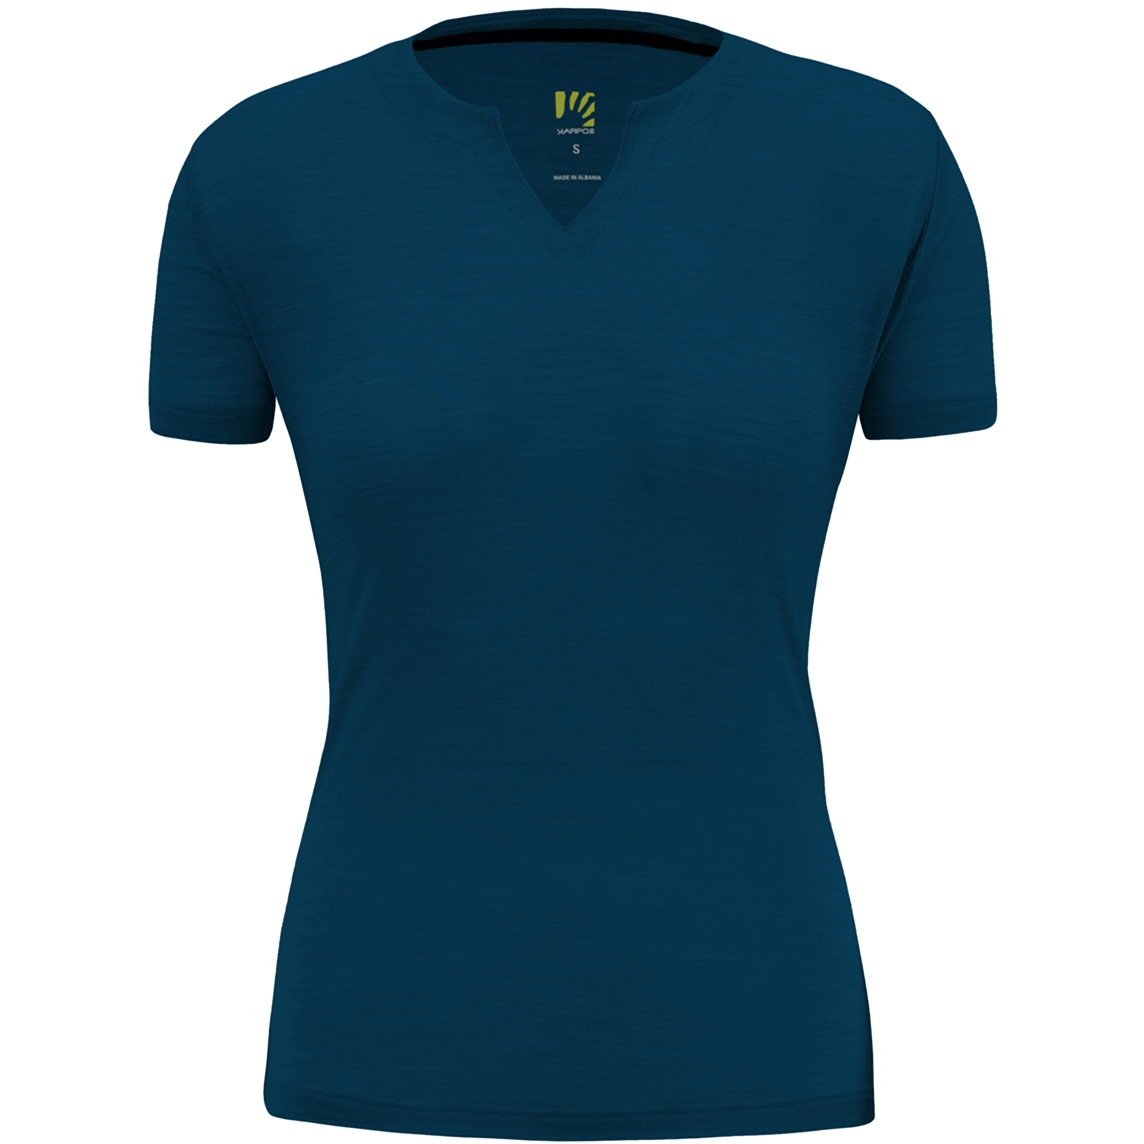 Produktbild von Karpos Coppolo Merino T-Shirt Damen - gibraltar sea